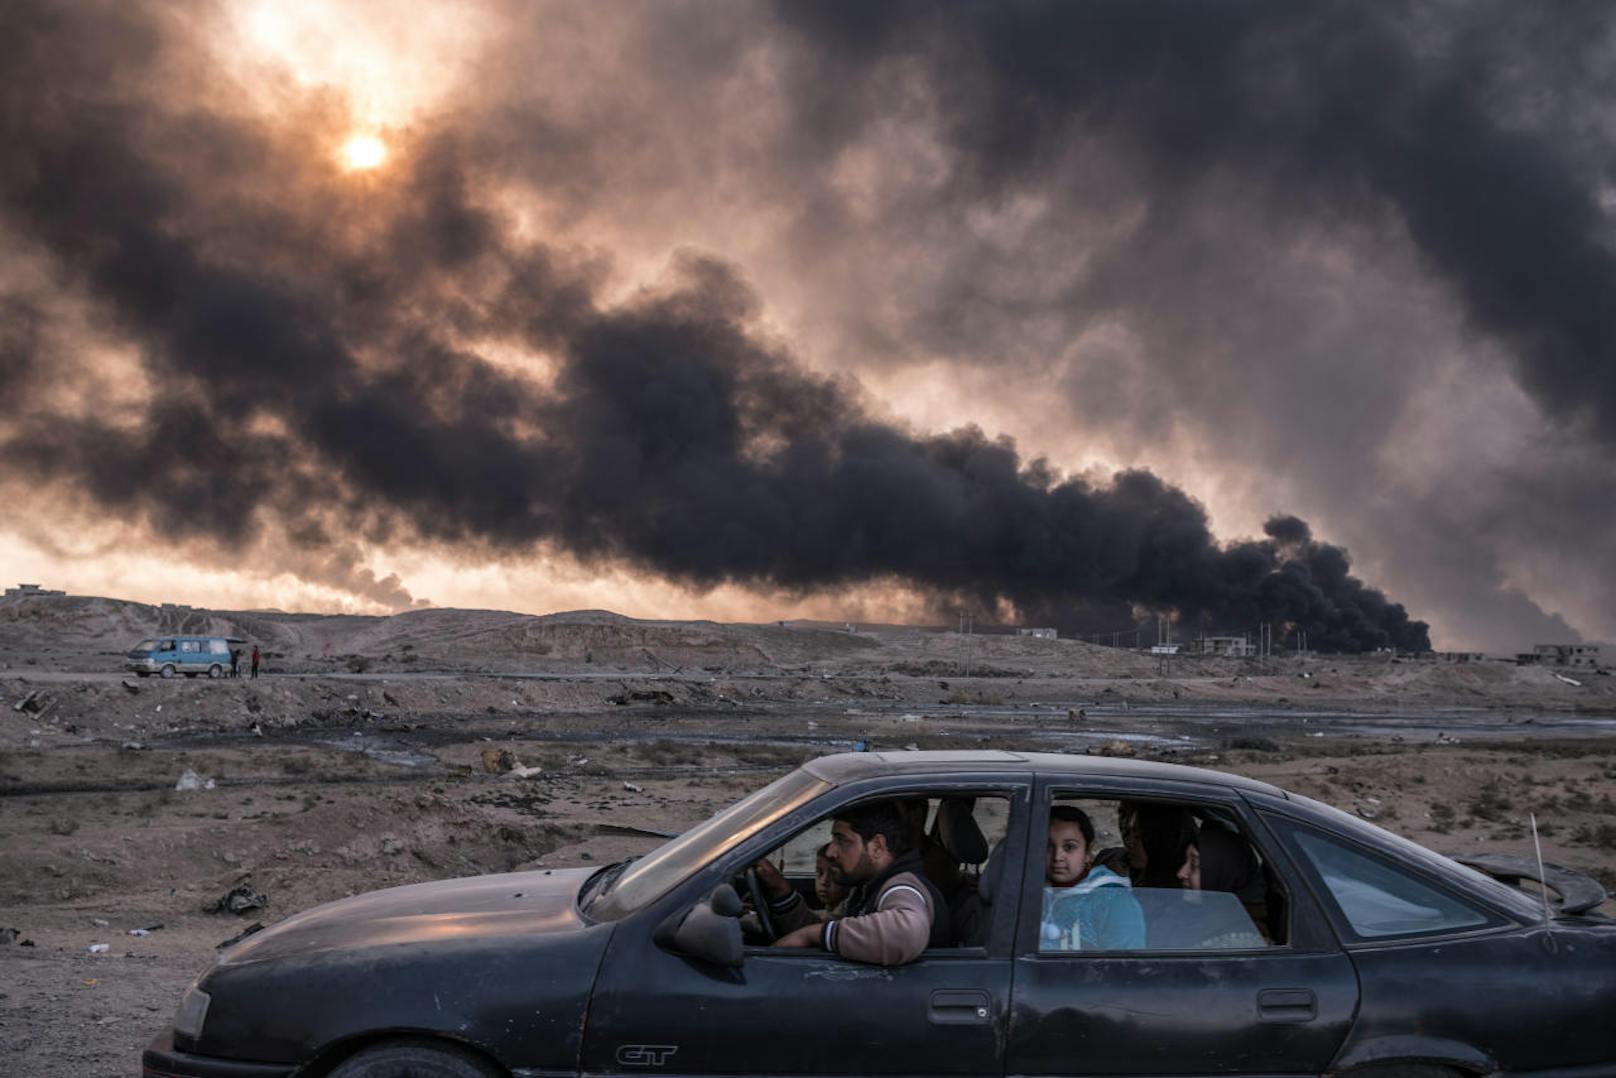 <b>Reportagen ? Zweiter Preis, Fotoserien</b>
Sergey Ponomarev, für The New York Times
Titel: Kampf um die Städte im Irak
Eine Familie auf der Flucht aus Mossul, im Hintergrund die brennenden Ölfelder von Qayyarah, 60 Kilometer südlich der Stadt, November 2016, Irak
